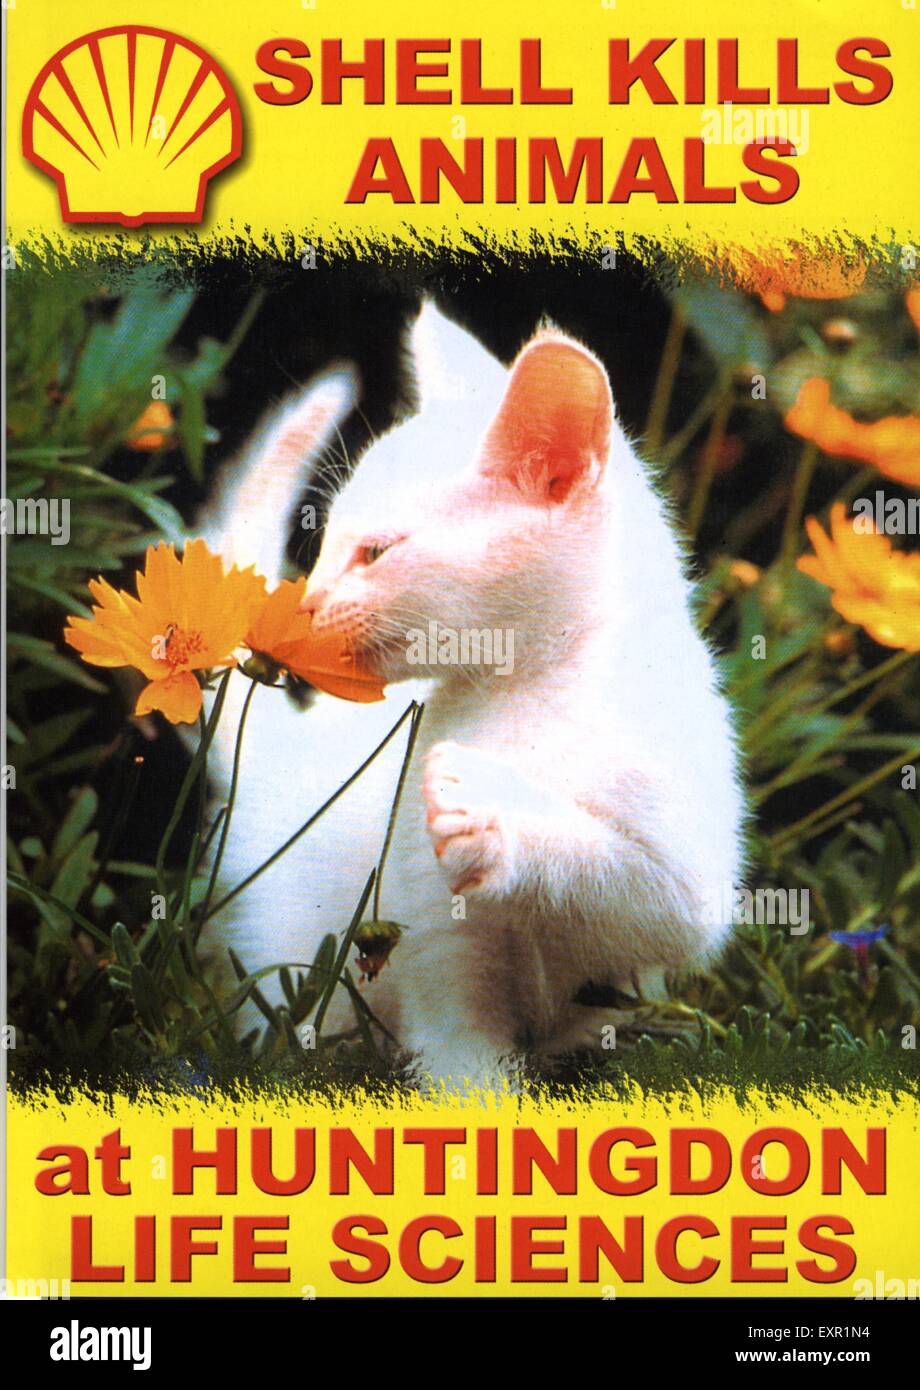 1990S UK i diritti degli animali Anti-Vivisection Magazine annuncio pubblicitario Foto Stock